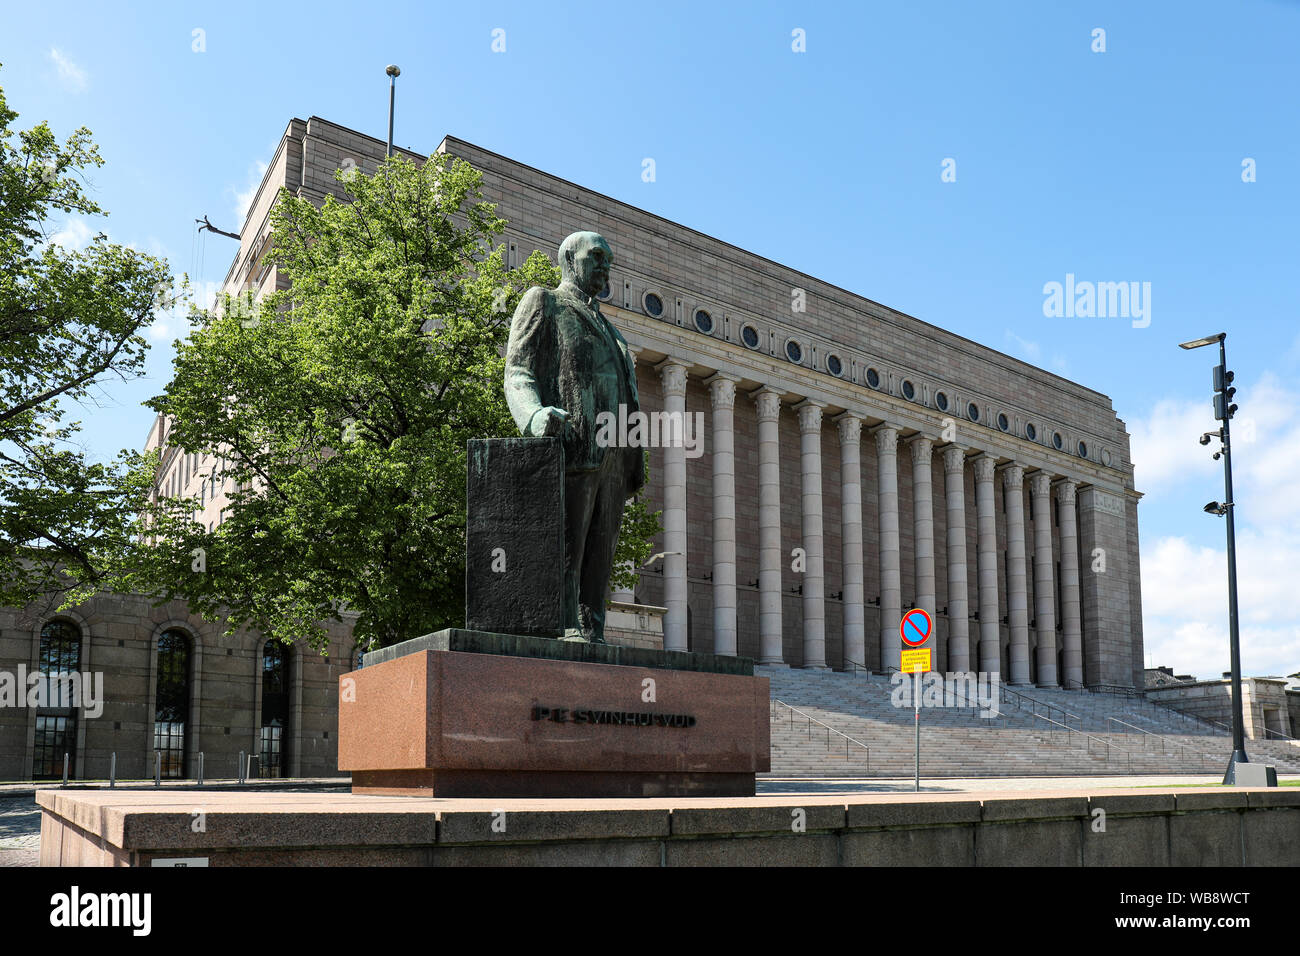 Estatua del presidente e-h. Svinhufvud en frente de la Casa del Parlamento en Helsinki, Finlandia Foto de stock